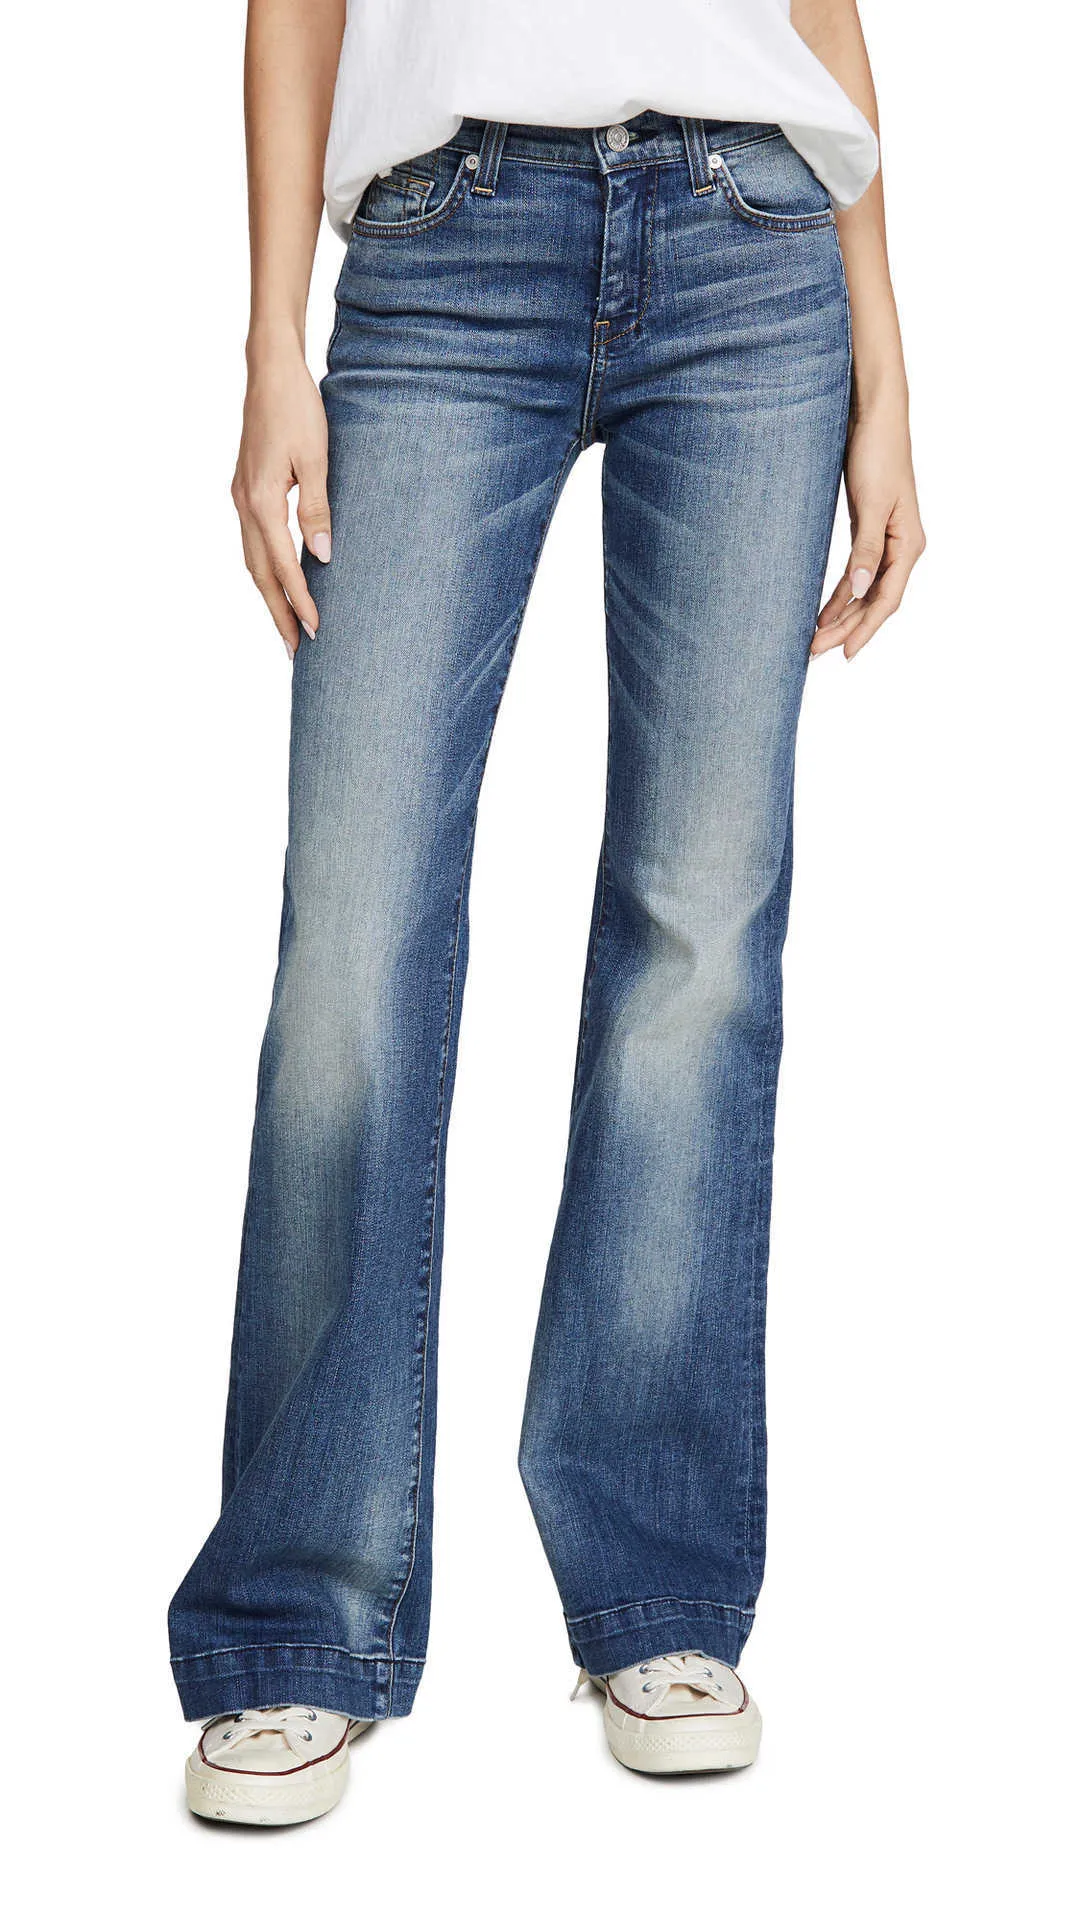 Jeans das mulheres 20 novos produtos no início do outono 7fam 7-shaped Calças de volta bolso de algodão elástico moído branco quadriciamento chifre denim calças mulheres